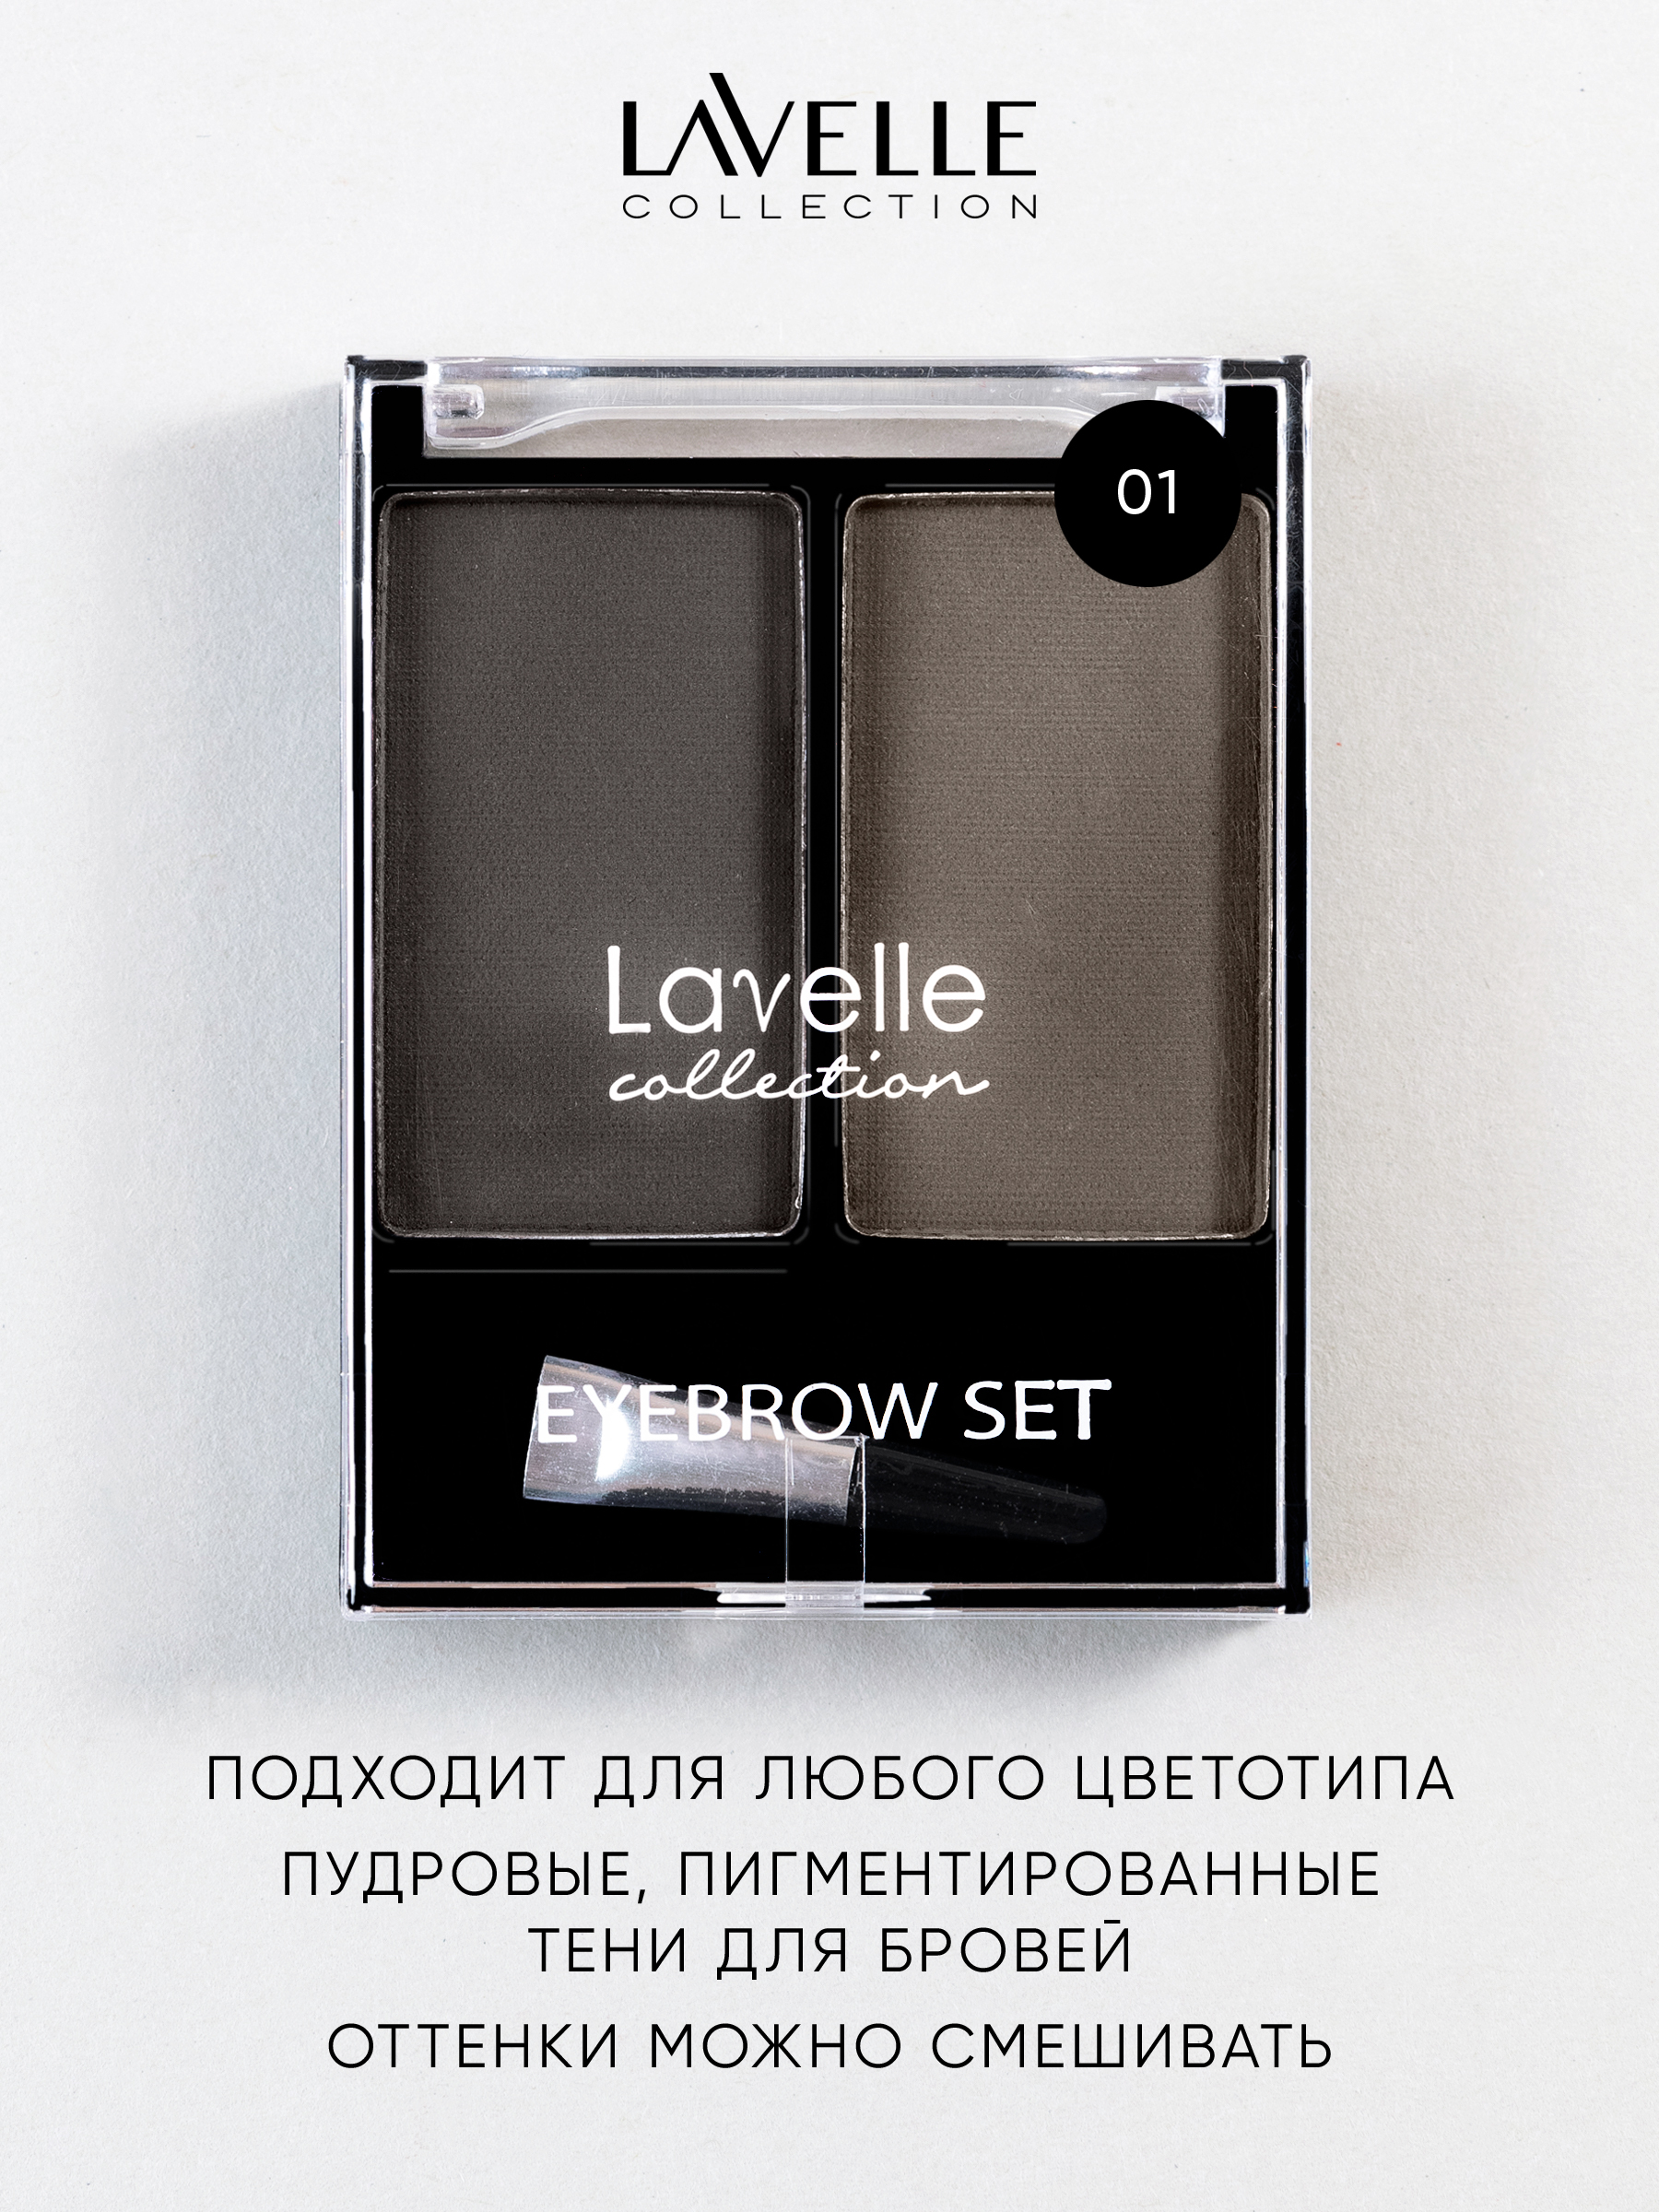 Lavelle collection отзывы. Для бровей bs01 Лавель. Тени для бровей Lavelle 01. Lavelle 02 тени для бровей. Тени для бровей Lavelle 03.